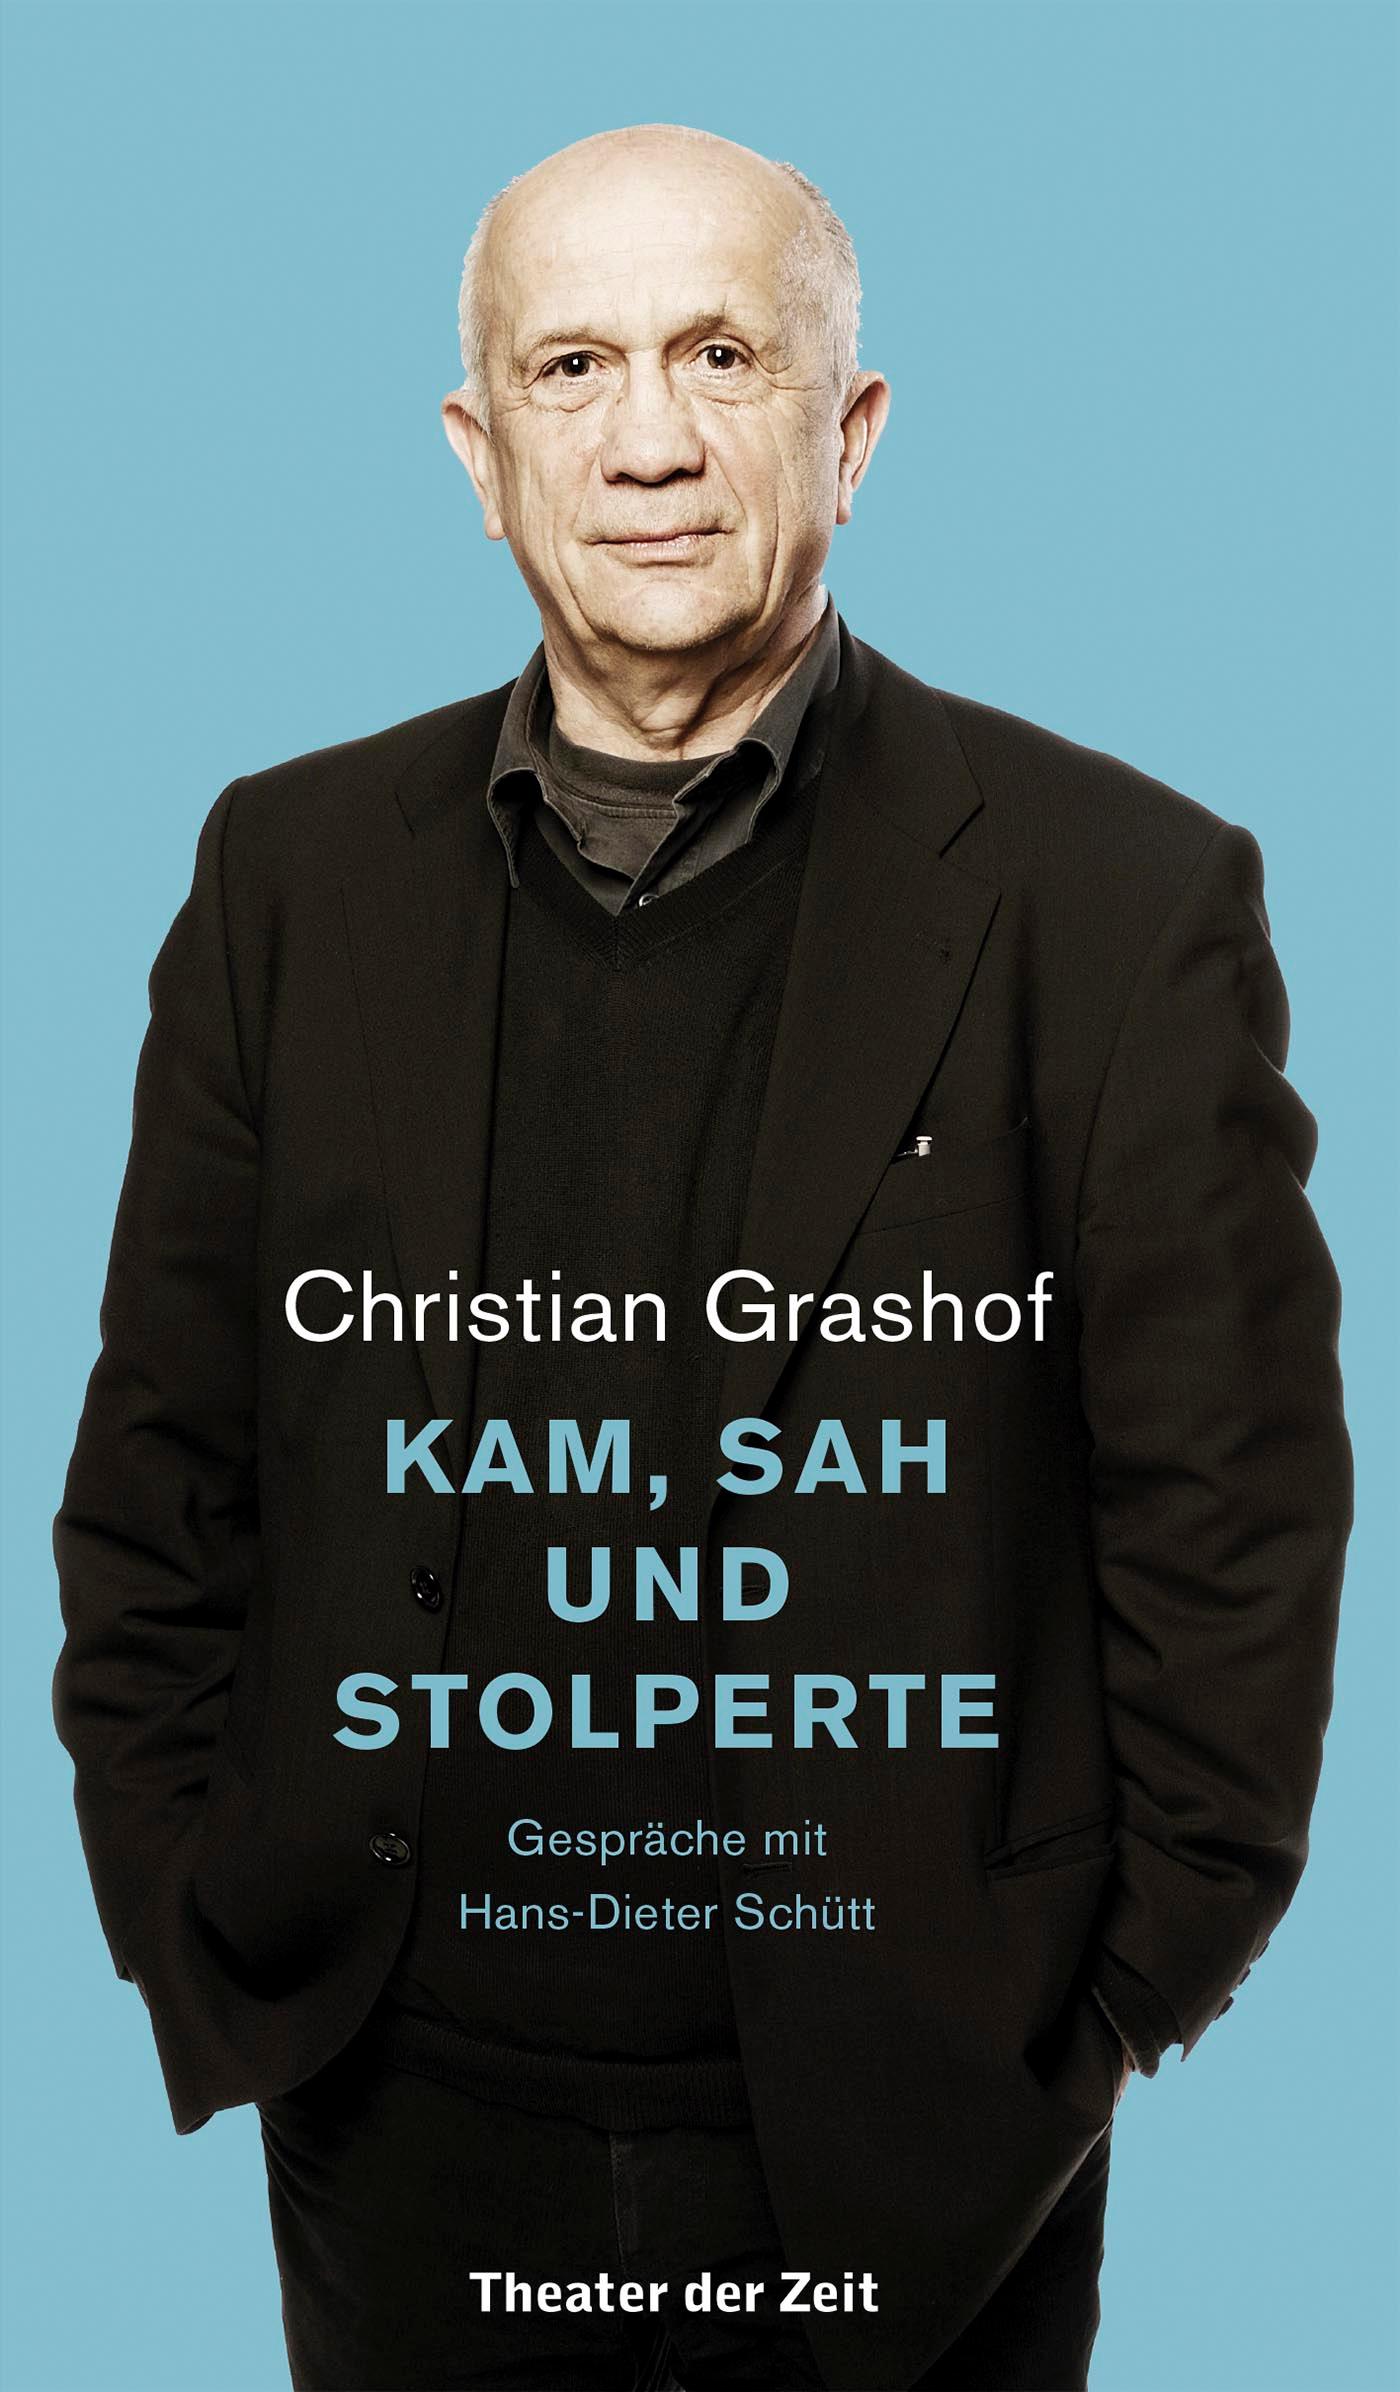 "Christian Grashof. Kam, sah und stolperte"